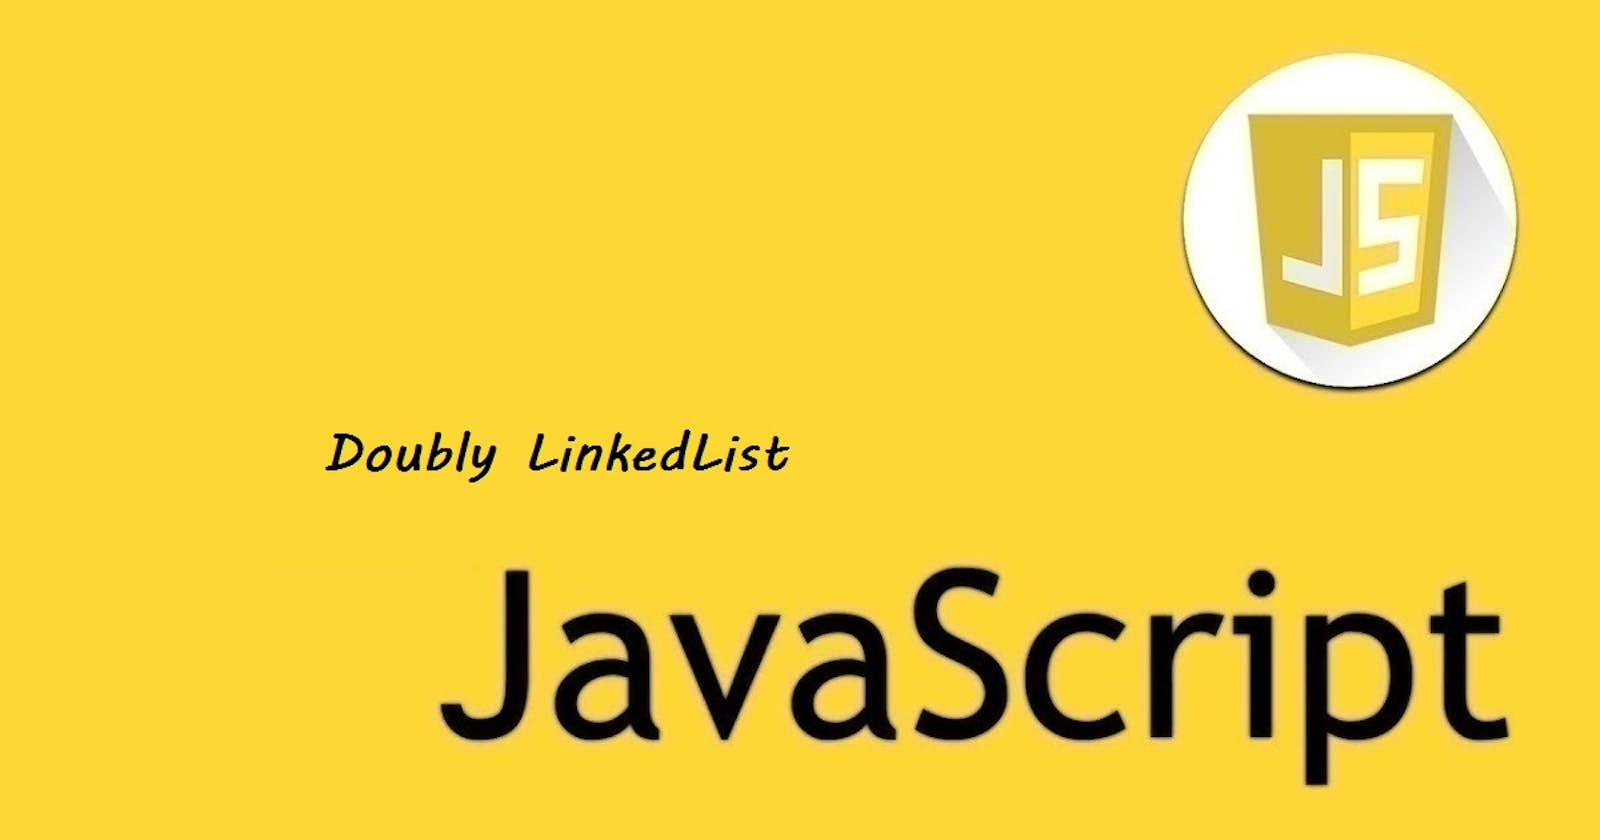 24 - JavaScript - Doubly LinkedList